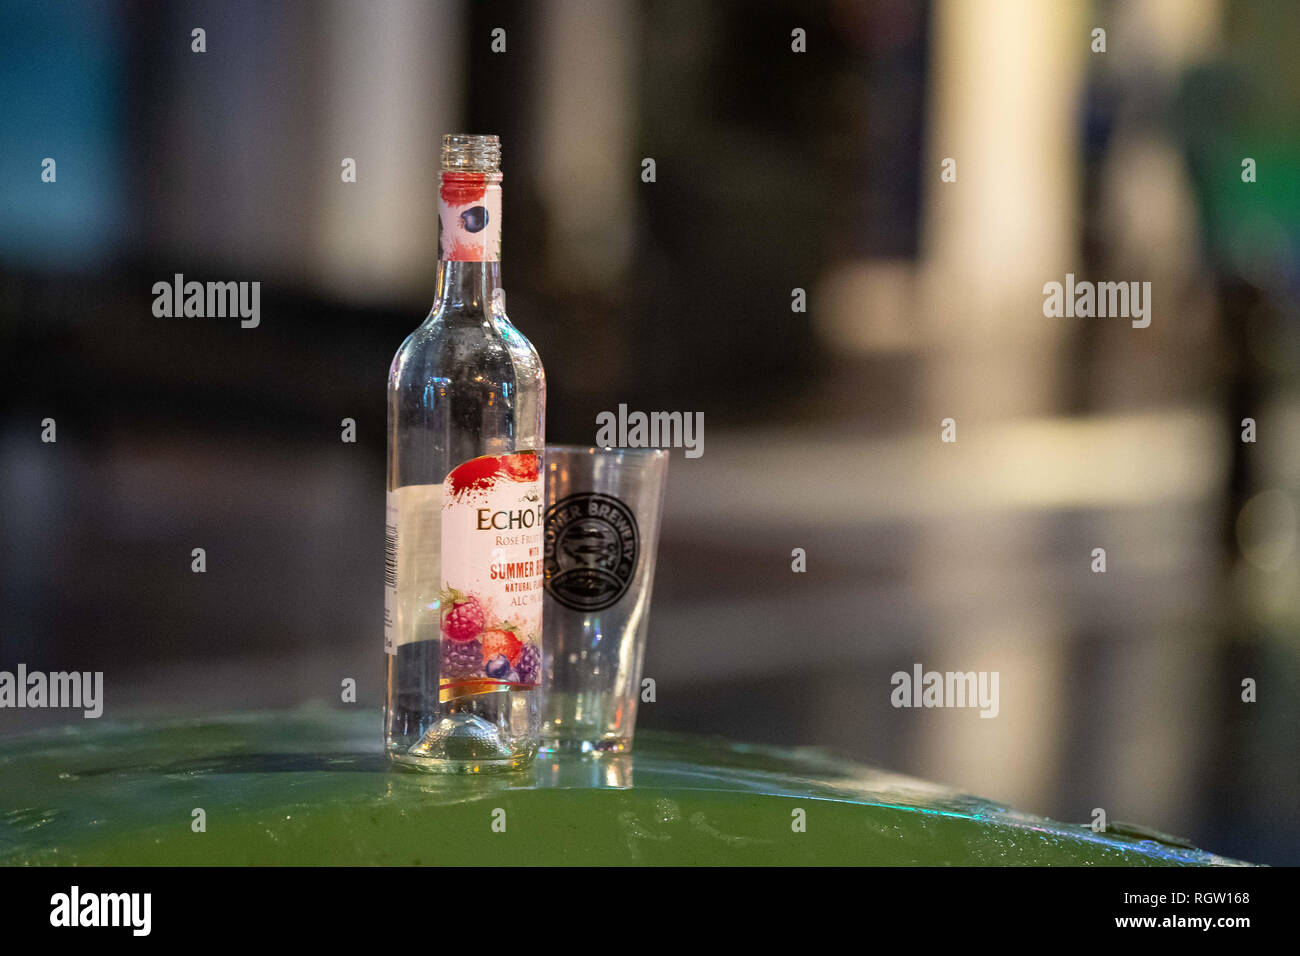 Eine leere Flasche von Echo fällt Alkohol auf einem Behälter Deckel in der  Nacht in Cardiff, Wales, UK Stockfotografie - Alamy